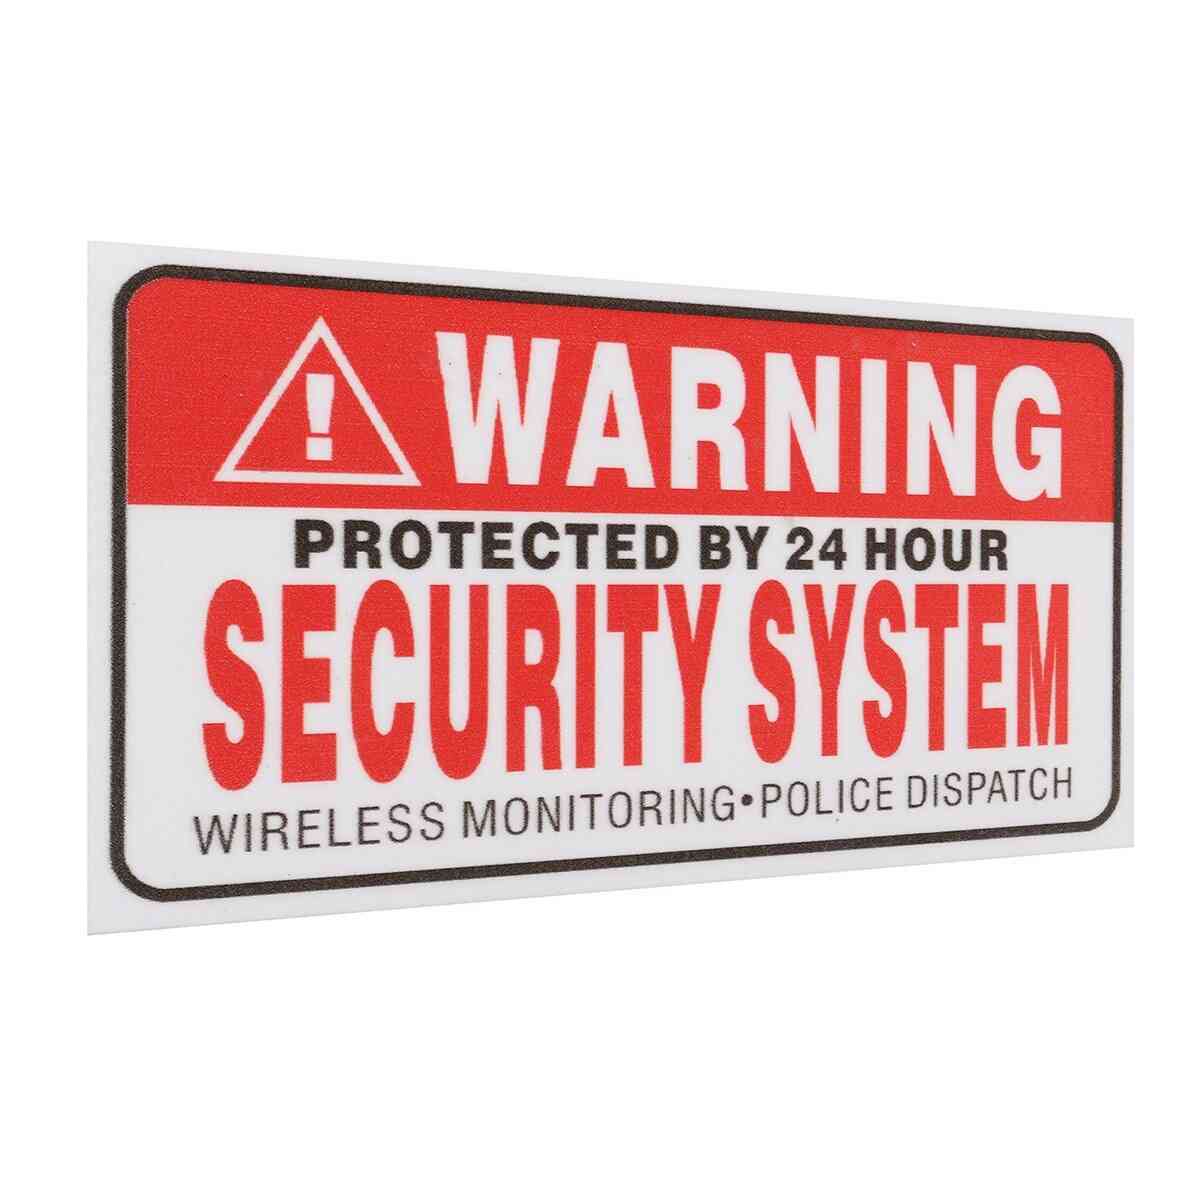 5x protegidas por pegatinas autoadhesivas del sistema de seguridad las 24 horas